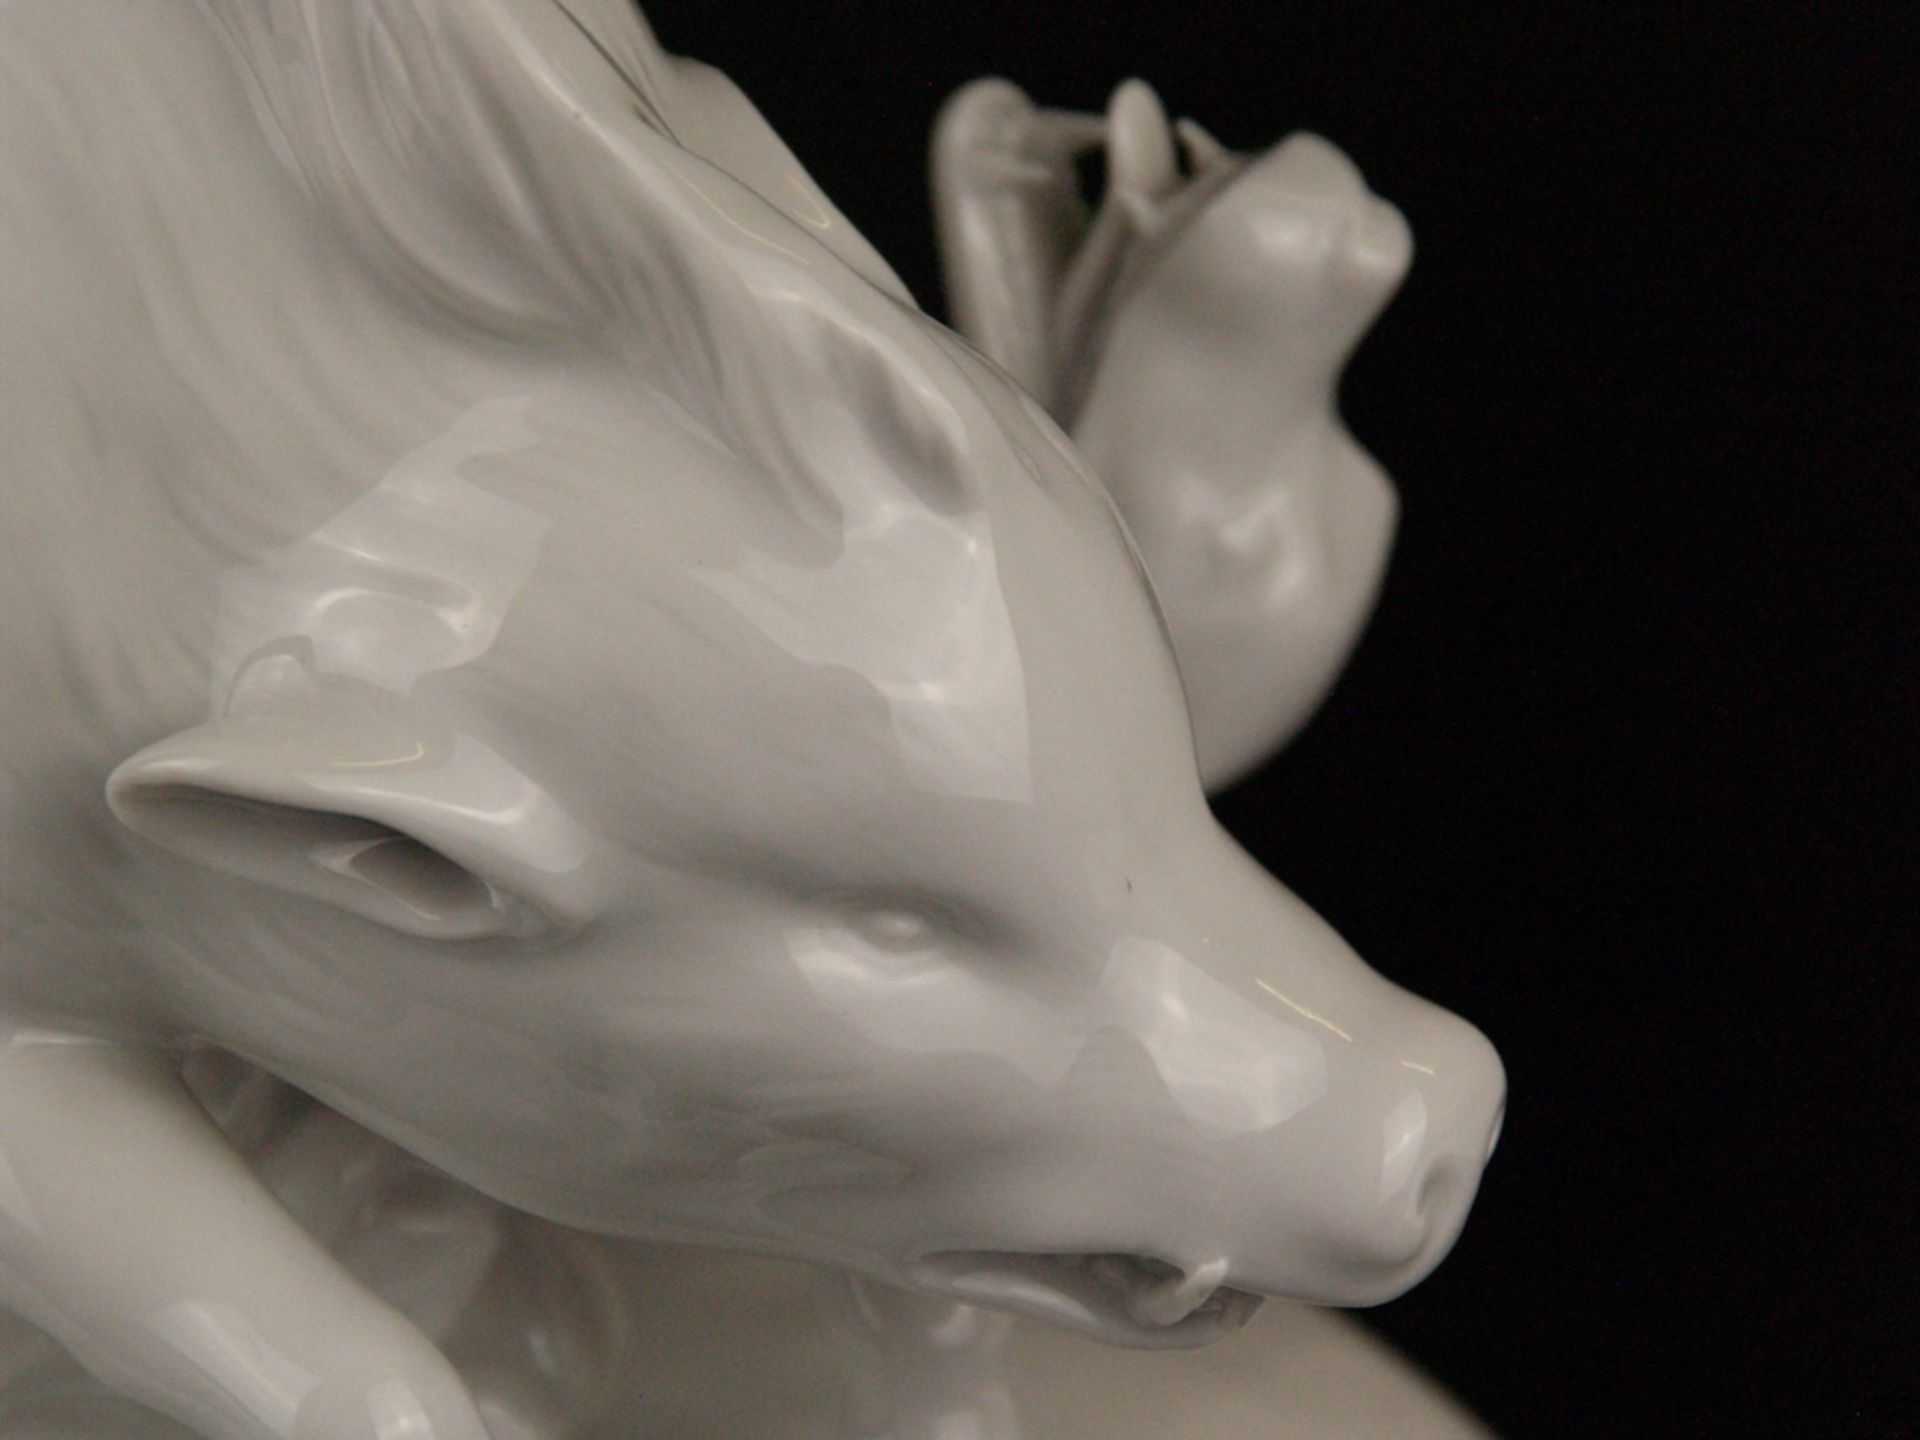 Porzellanfigur "Wildschweinjagd mit zwei Hunden" - blaue Radmarke Höchst, weißes Porzellan, glasier - Bild 8 aus 10